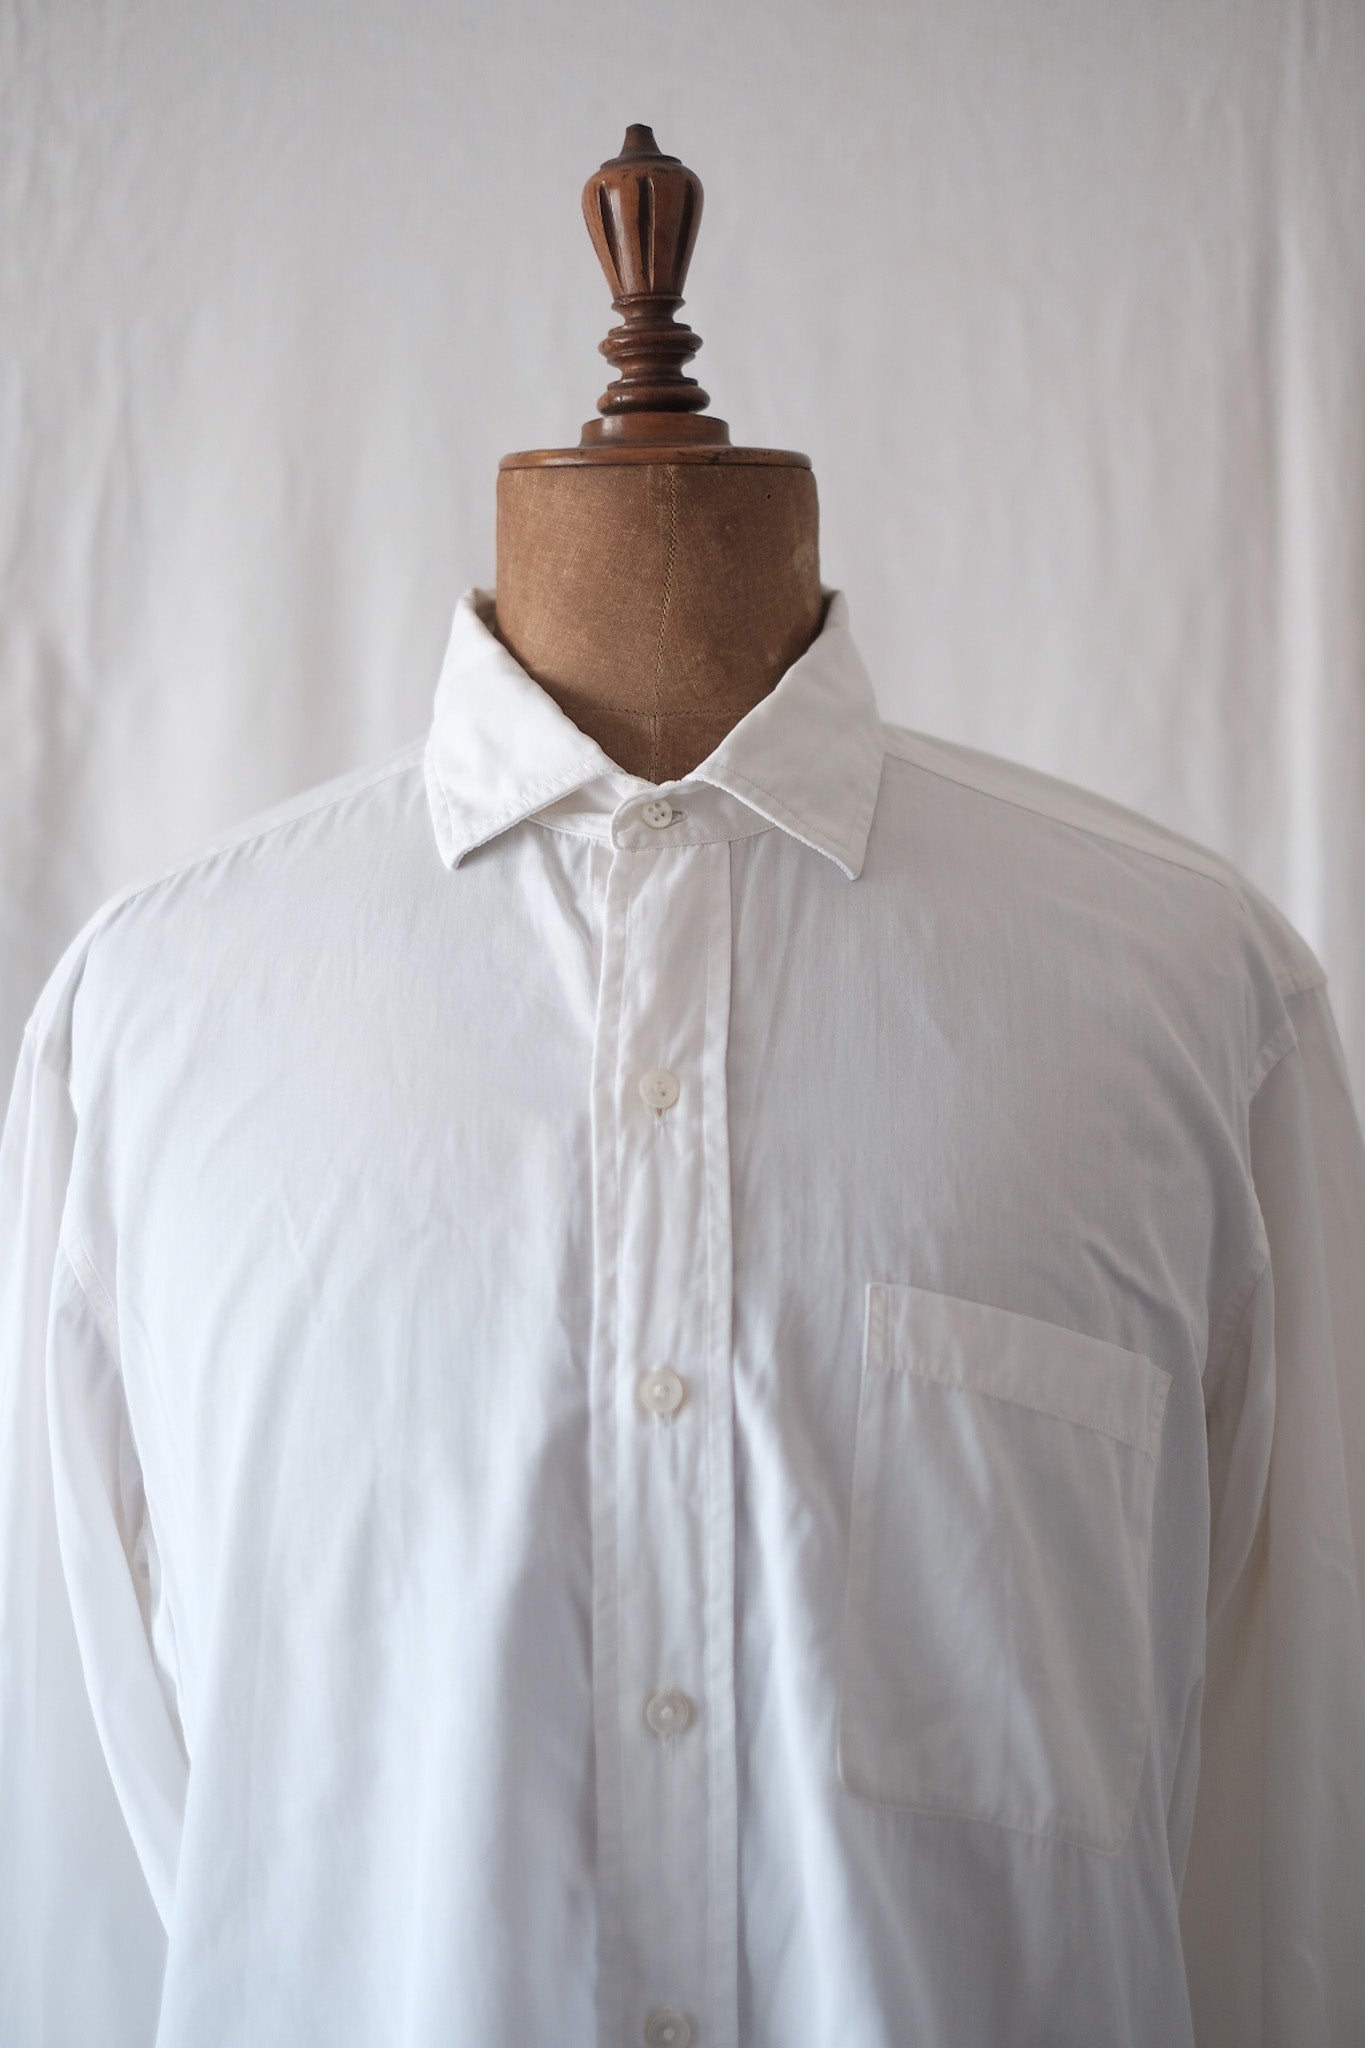 [~ 40 '] 영국의 빈티지 드레스 셔츠